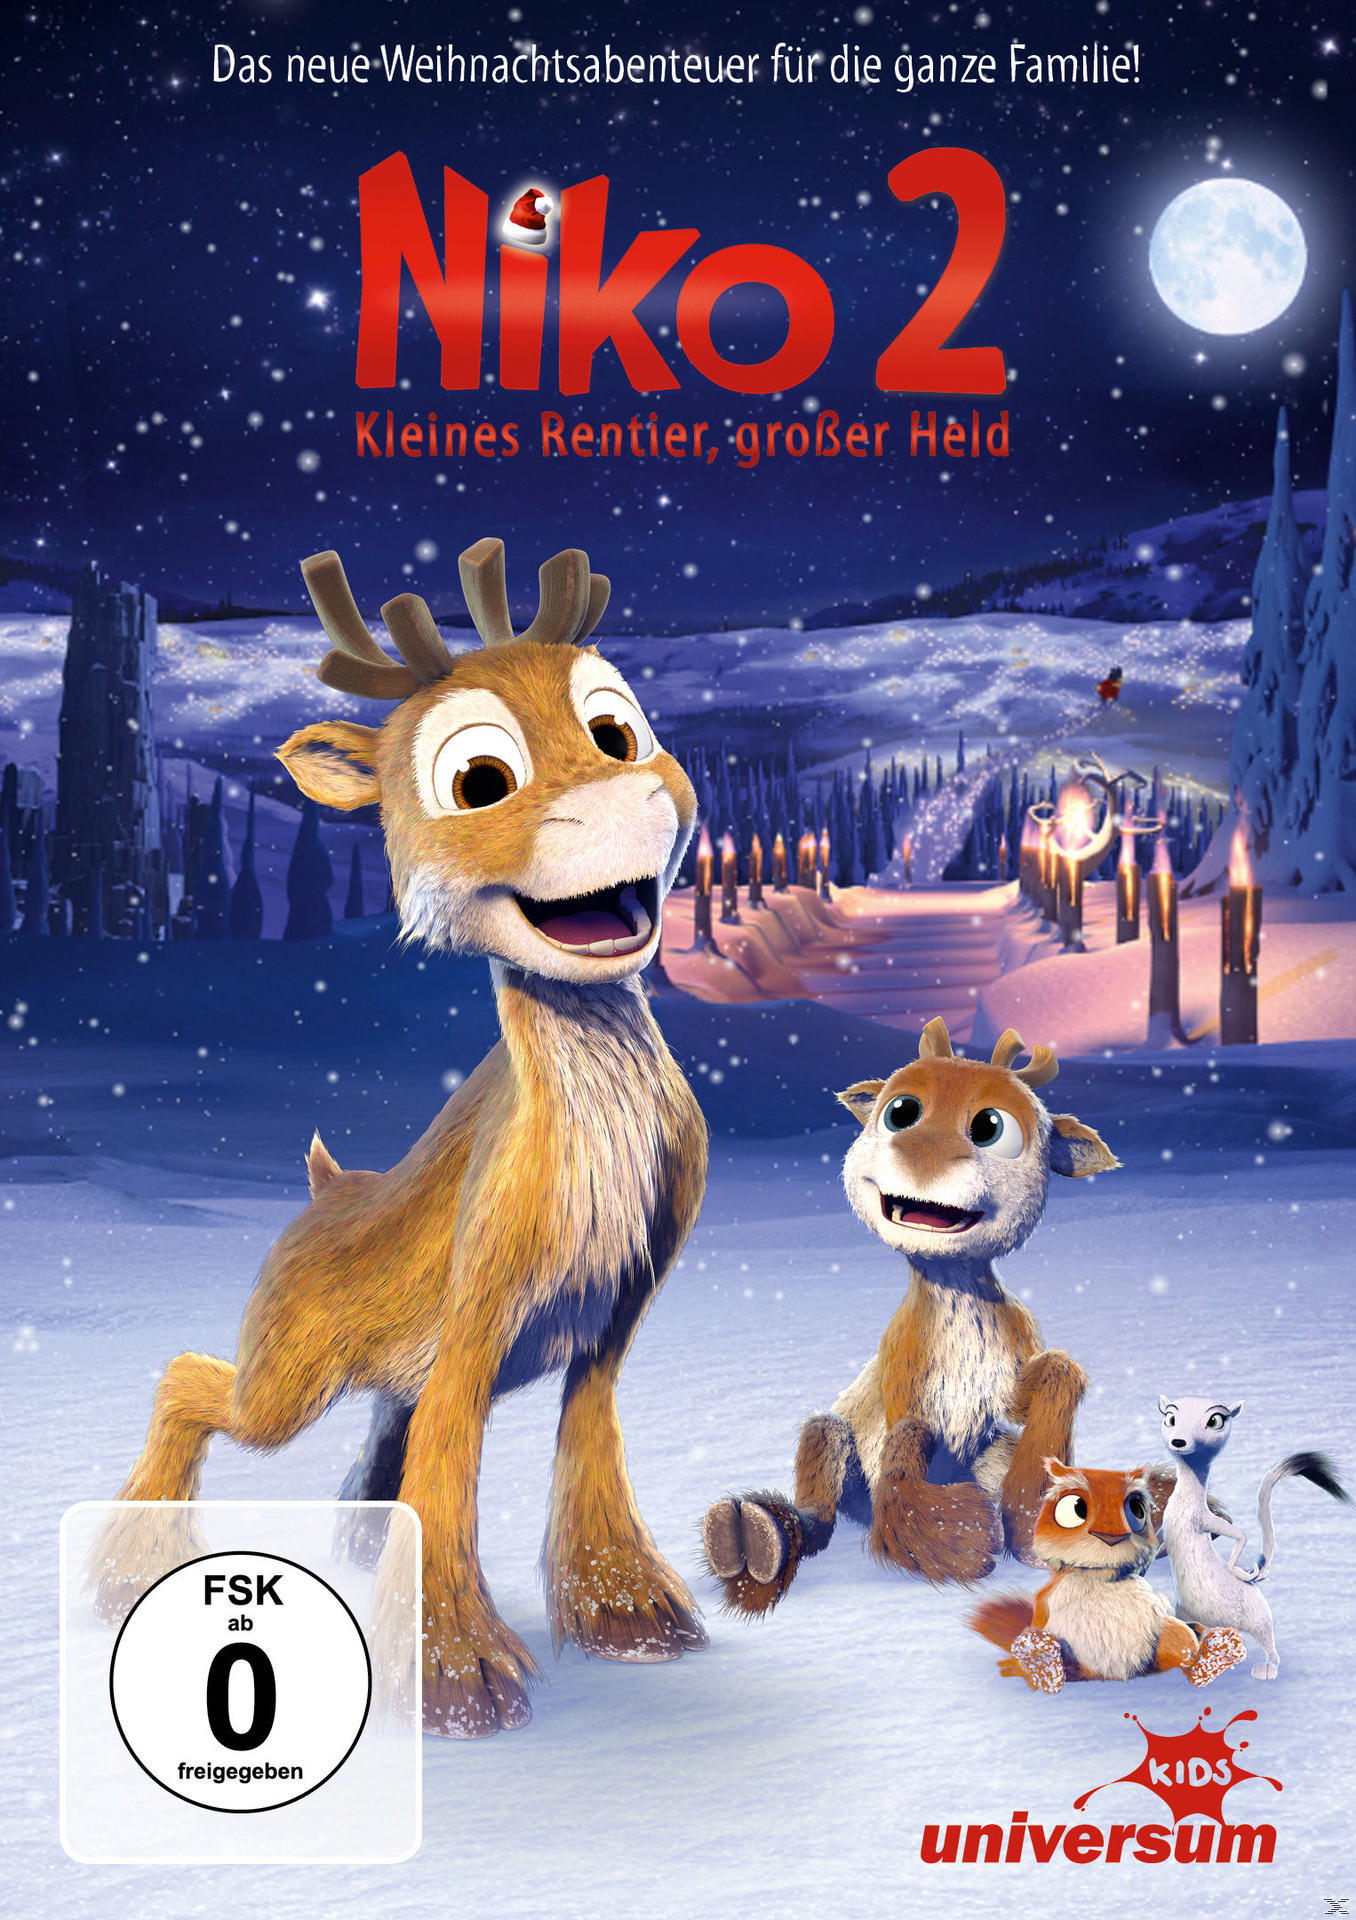 Niko 2 - Kleines Rentier, DVD Held großer